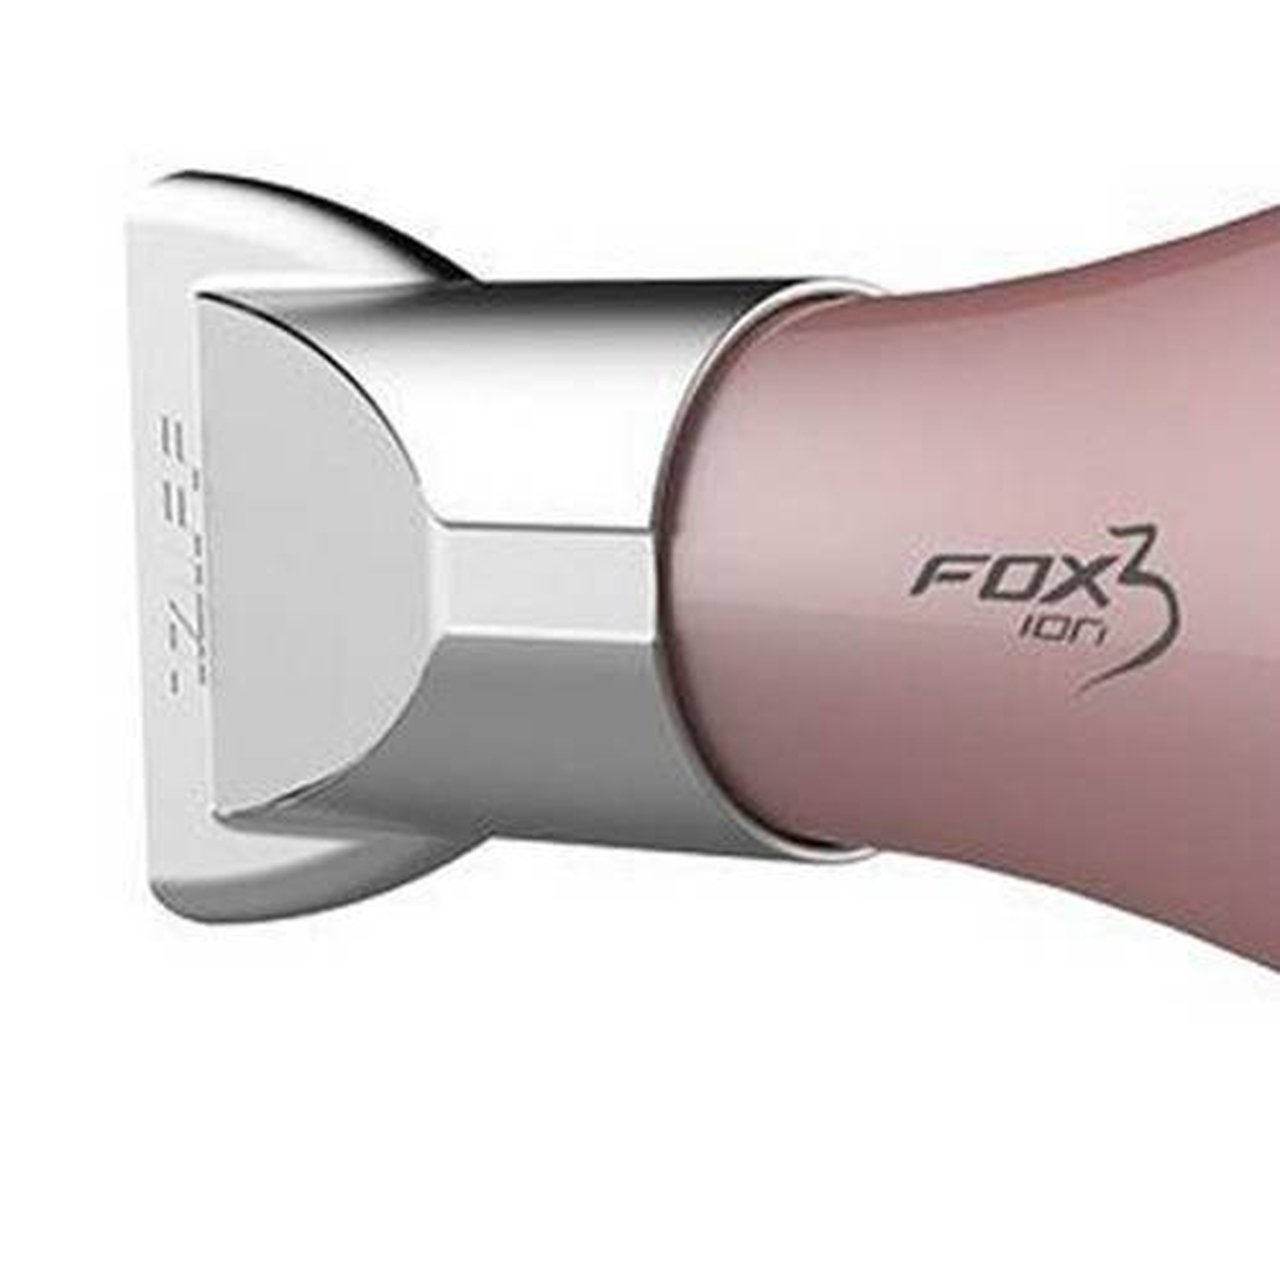 Taiff Secador De Cabelo Fox Ion3 Rose Profissional 2200w